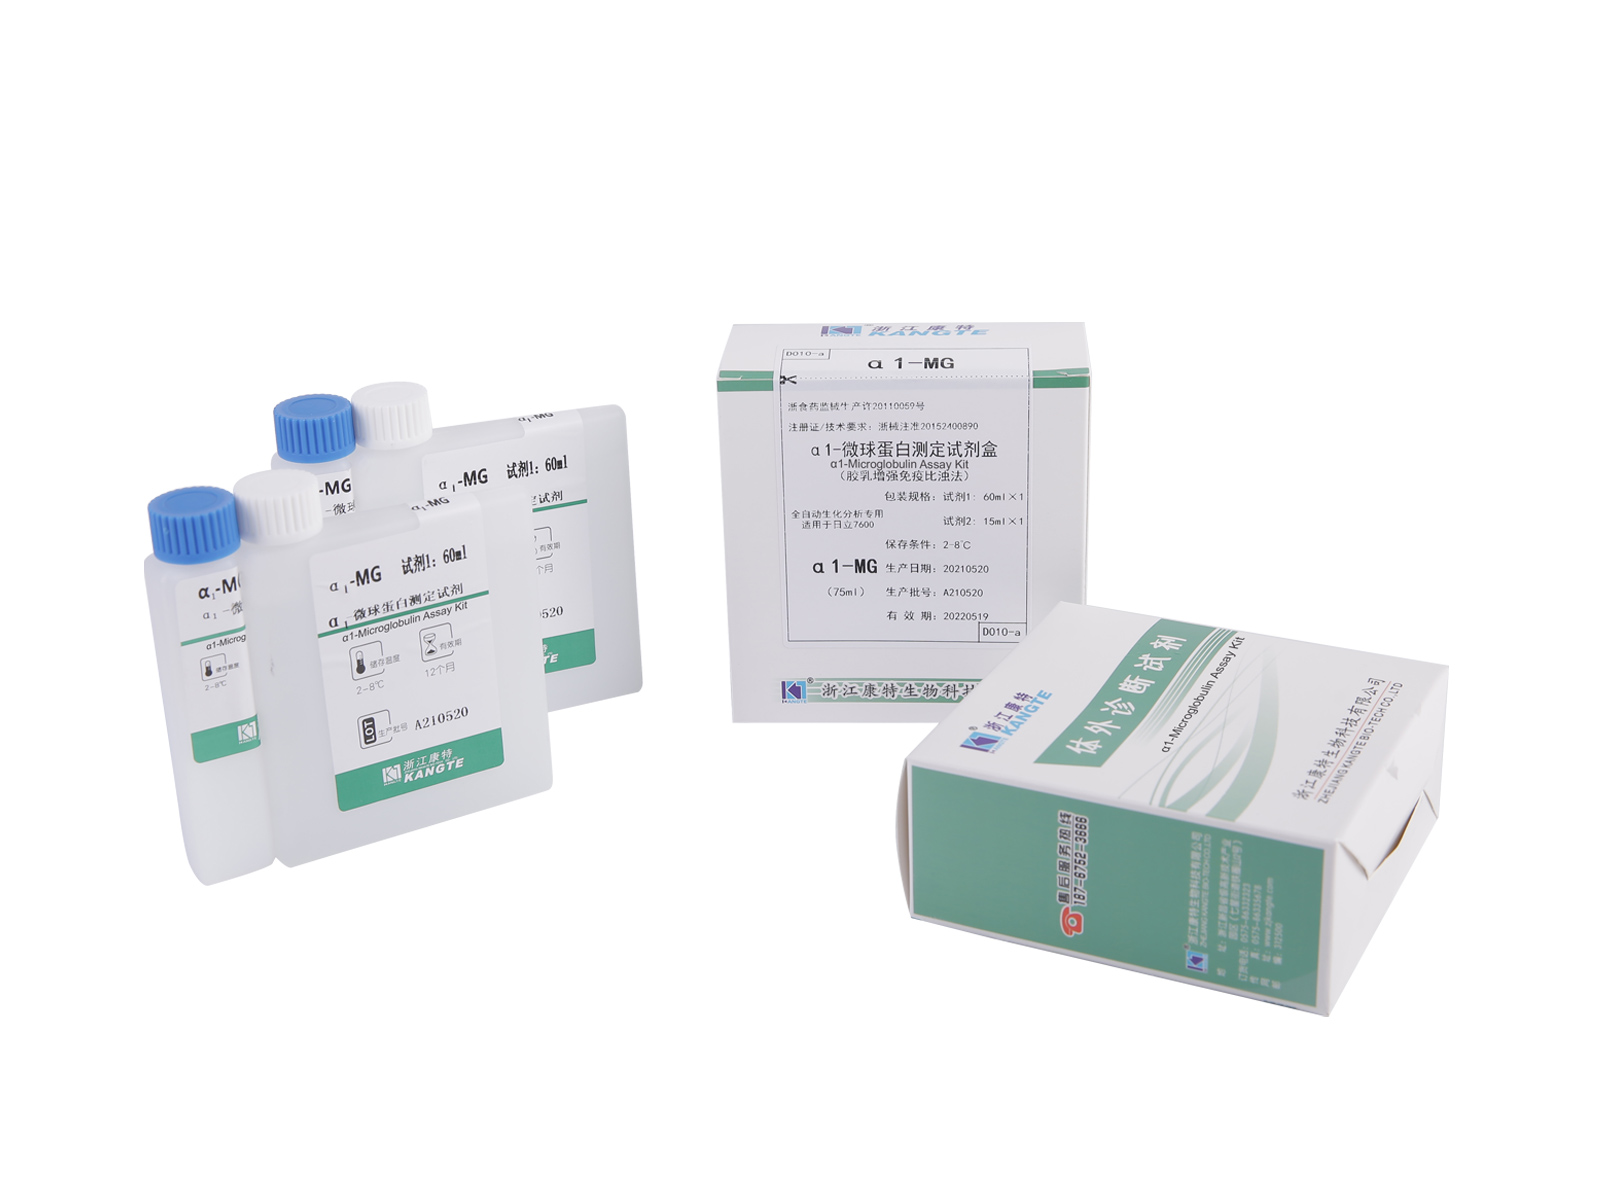 【α1-MG】 Kit de ensaio de α1-microglobulina (método imunoturbidimétrico aprimorado com látex)